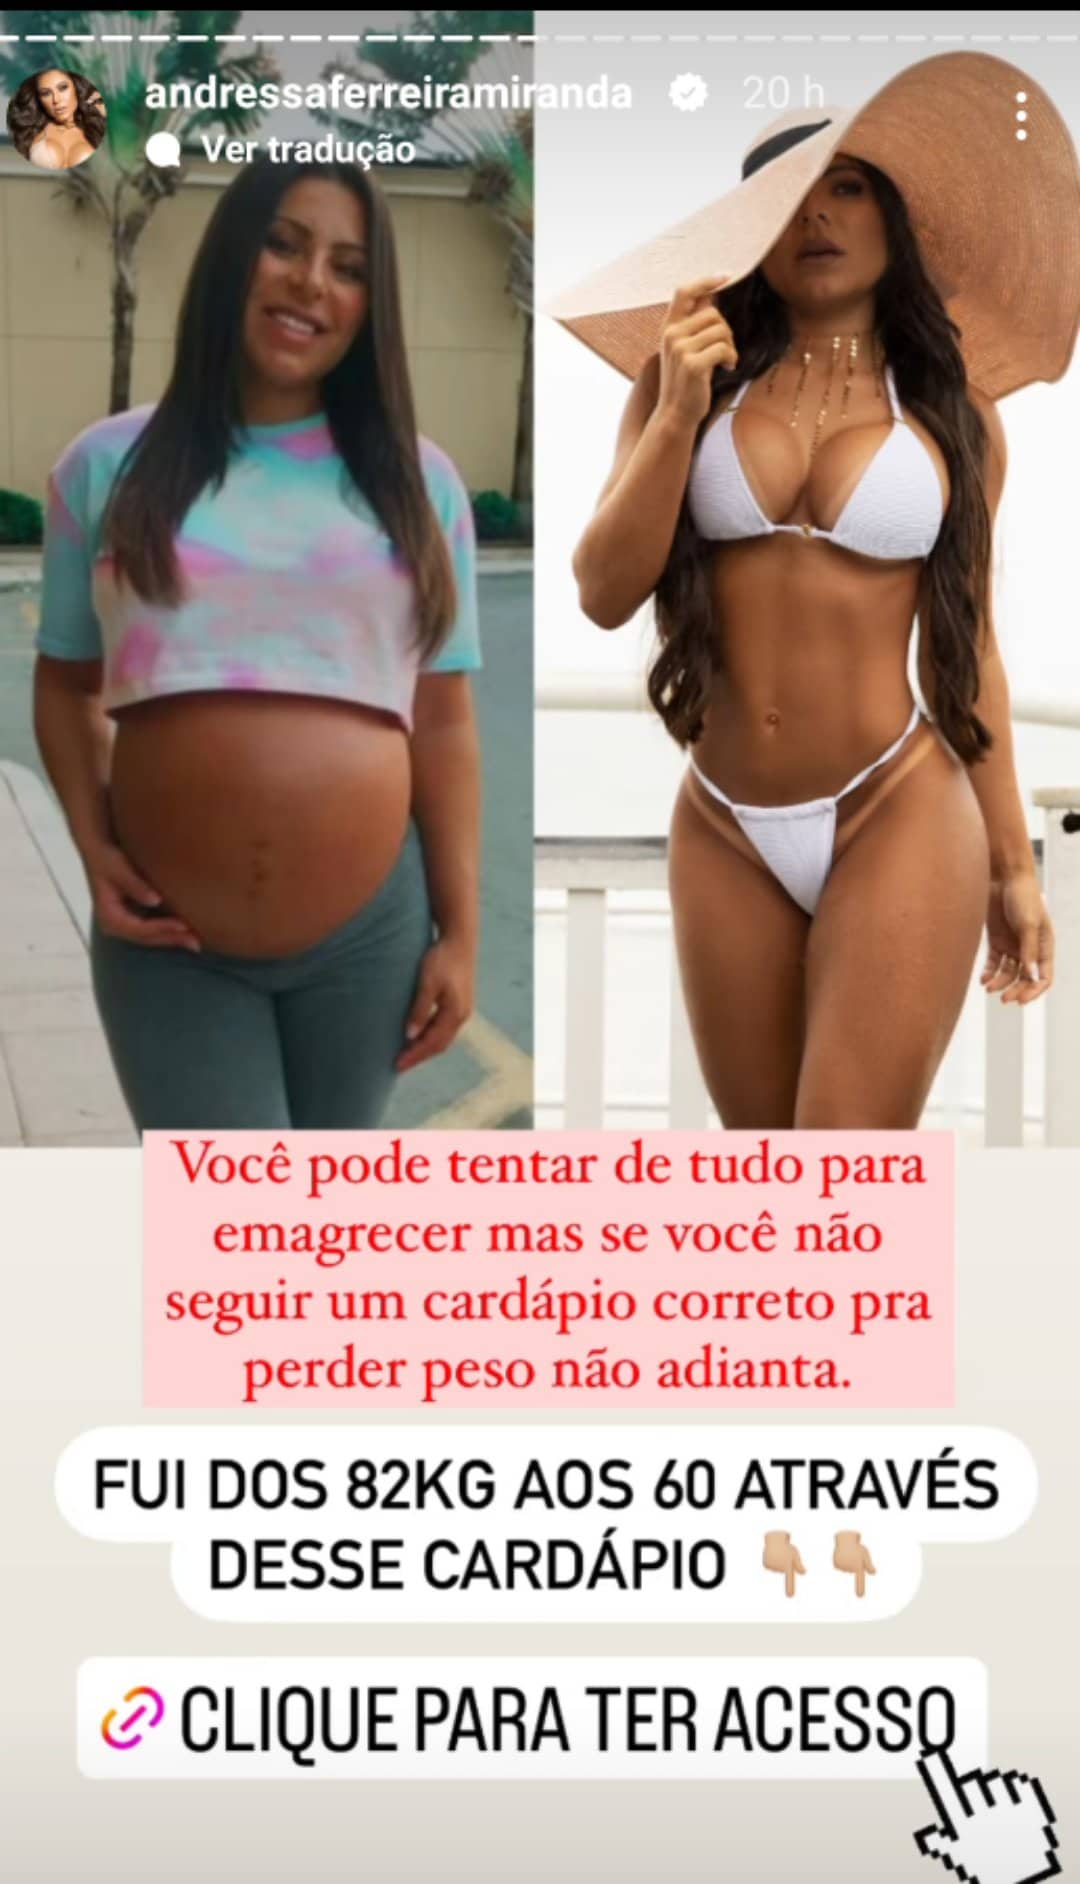 Andressa Ferreira antes e depois